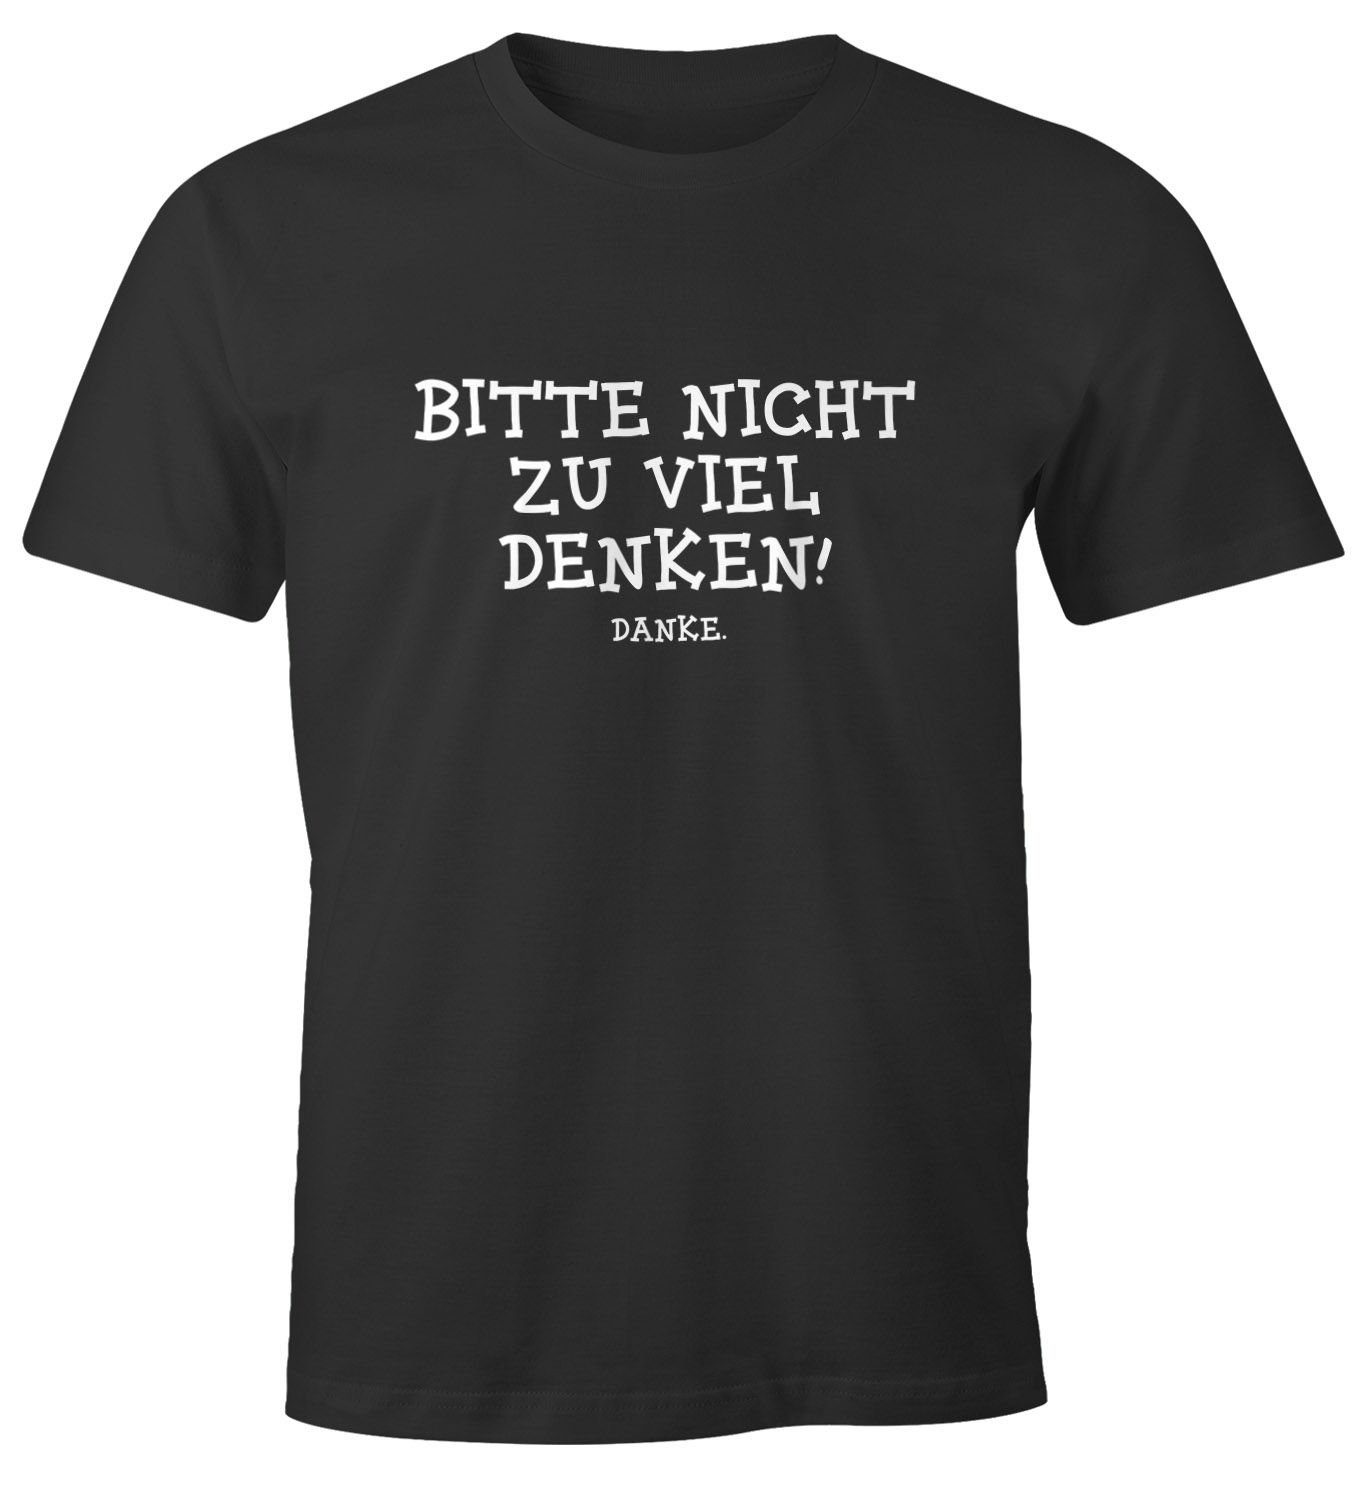 Kostenloser Versand bundesweit MoonWorks Print-Shirt Herren lustiges T-Shirt denken. mit viel Print zu Bitte Fun-Shirt nicht Moonworks® Spruch